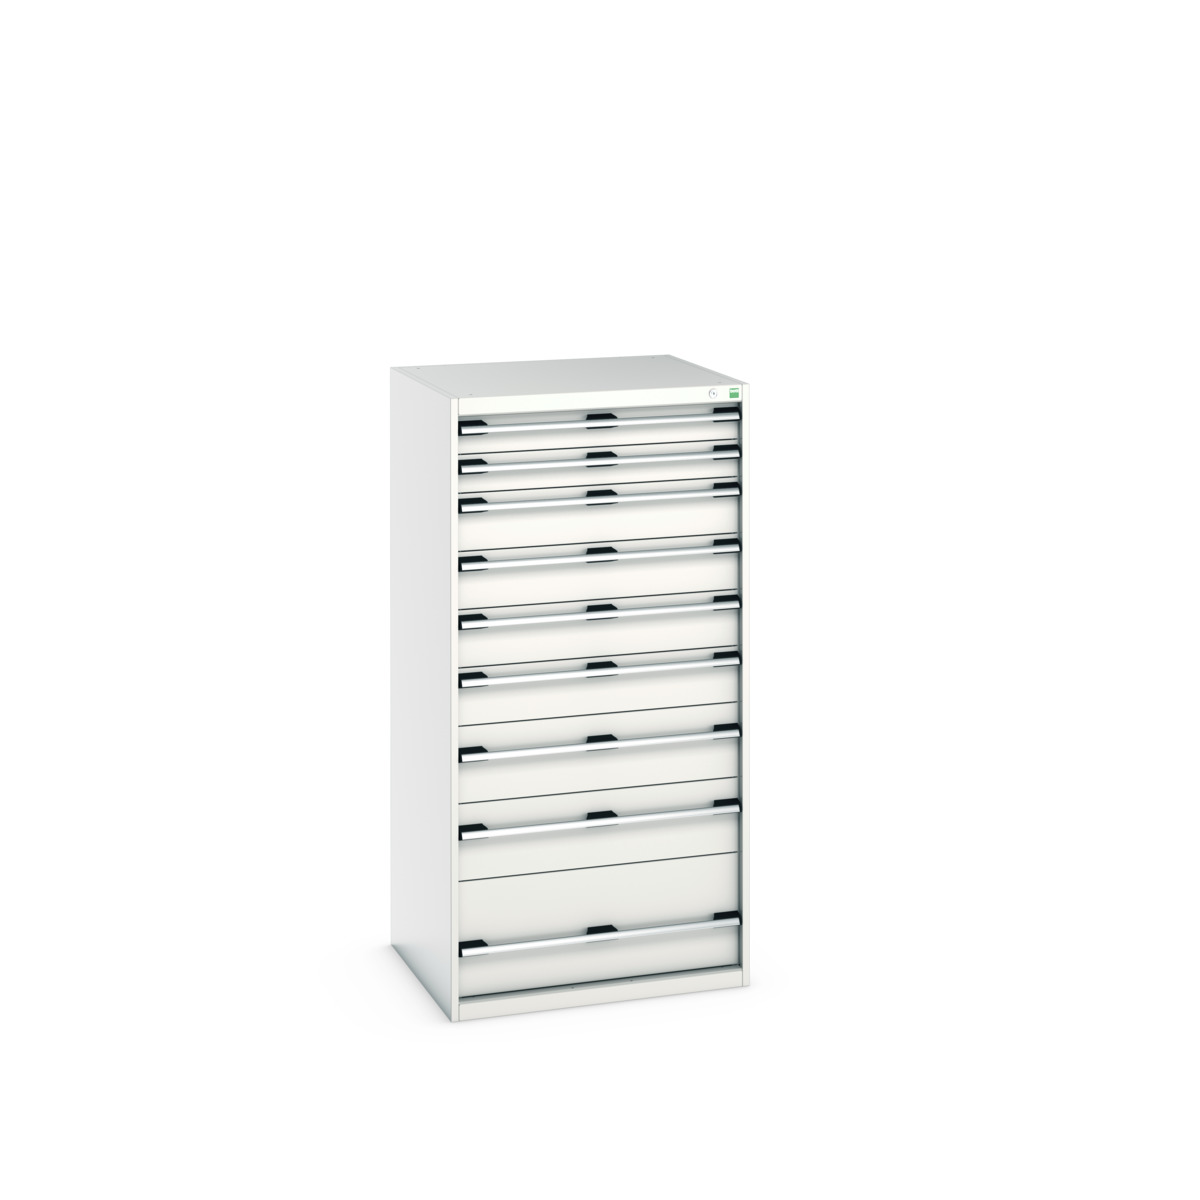 40028039.16V - cubio drawer cabinet